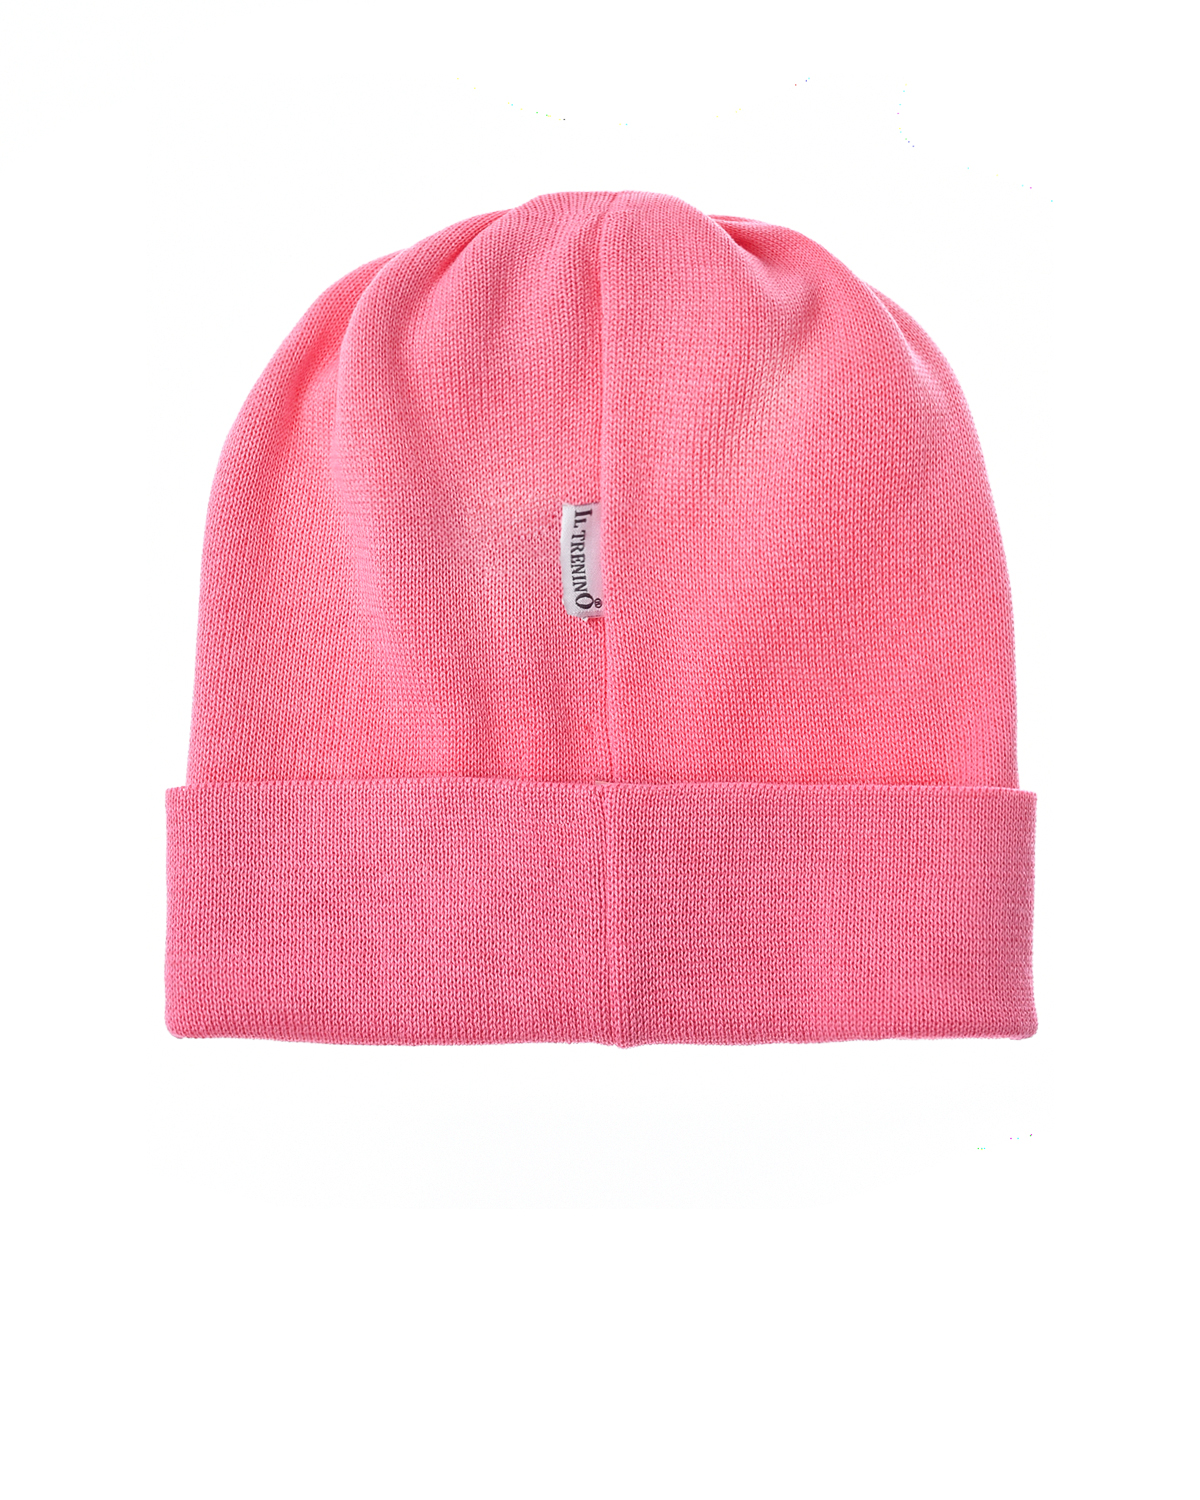 Шапка розовый цвет. Bogner шапка розовая. Розовая шапка 2023. Розовая шапка с лейблом. Шапка с патчем.